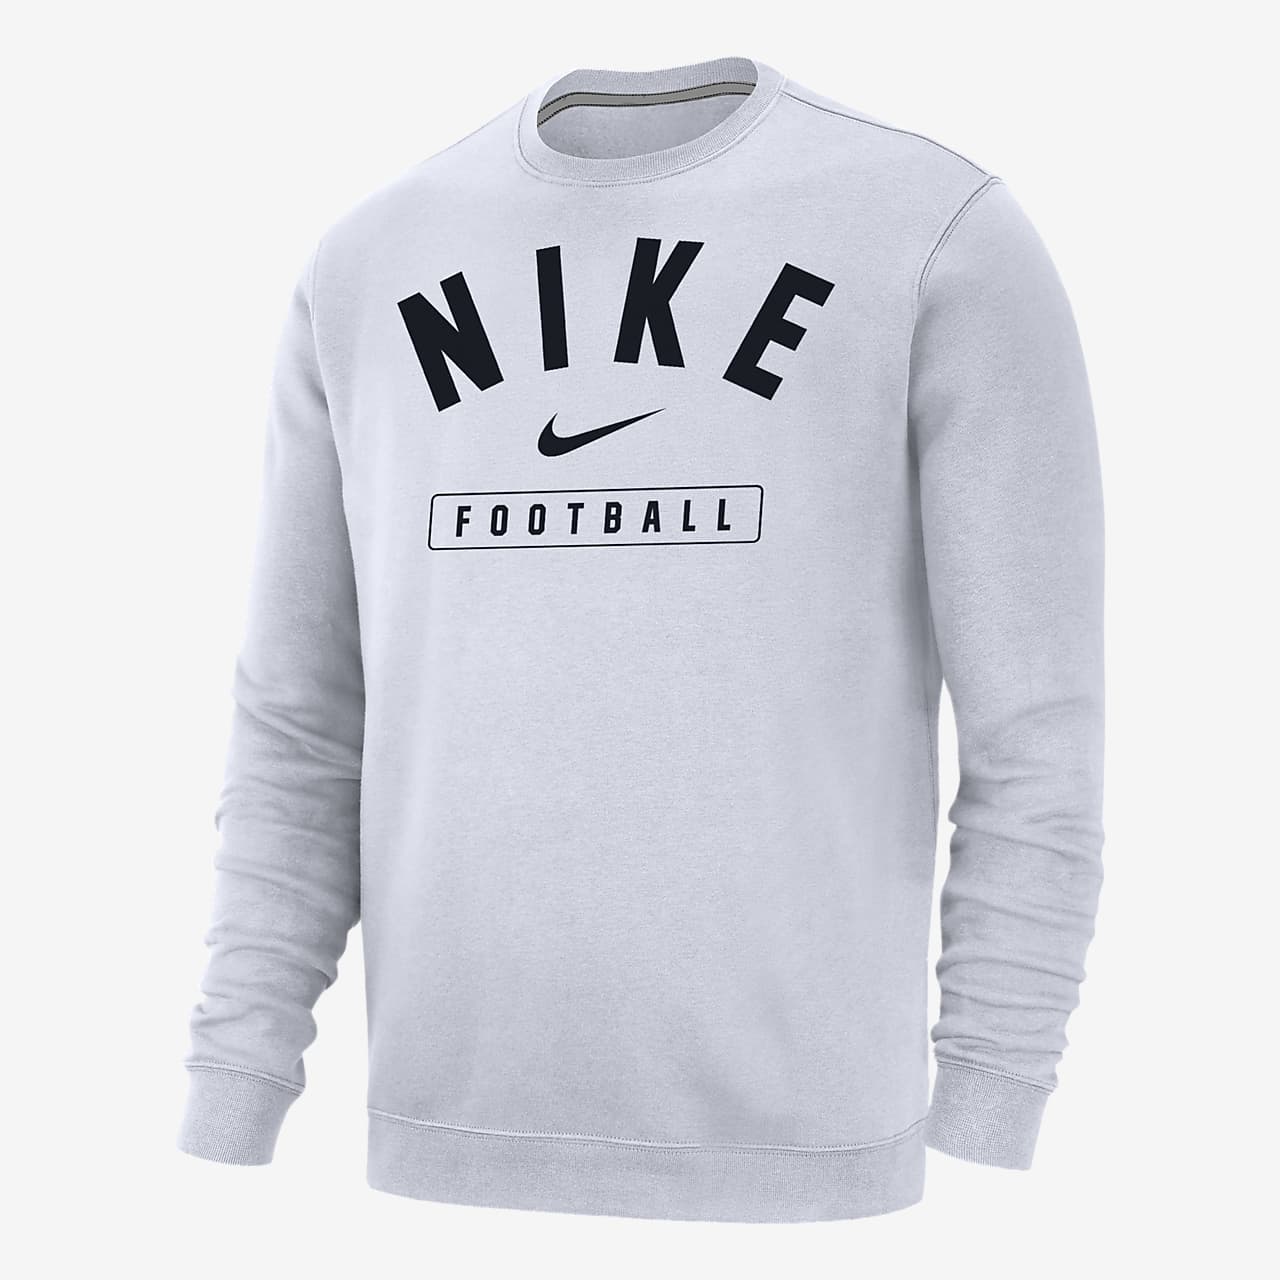 Fremmedgøre Bekræftelse indebære Nike Football Men's Crew-Neck Sweatshirt. Nike.com